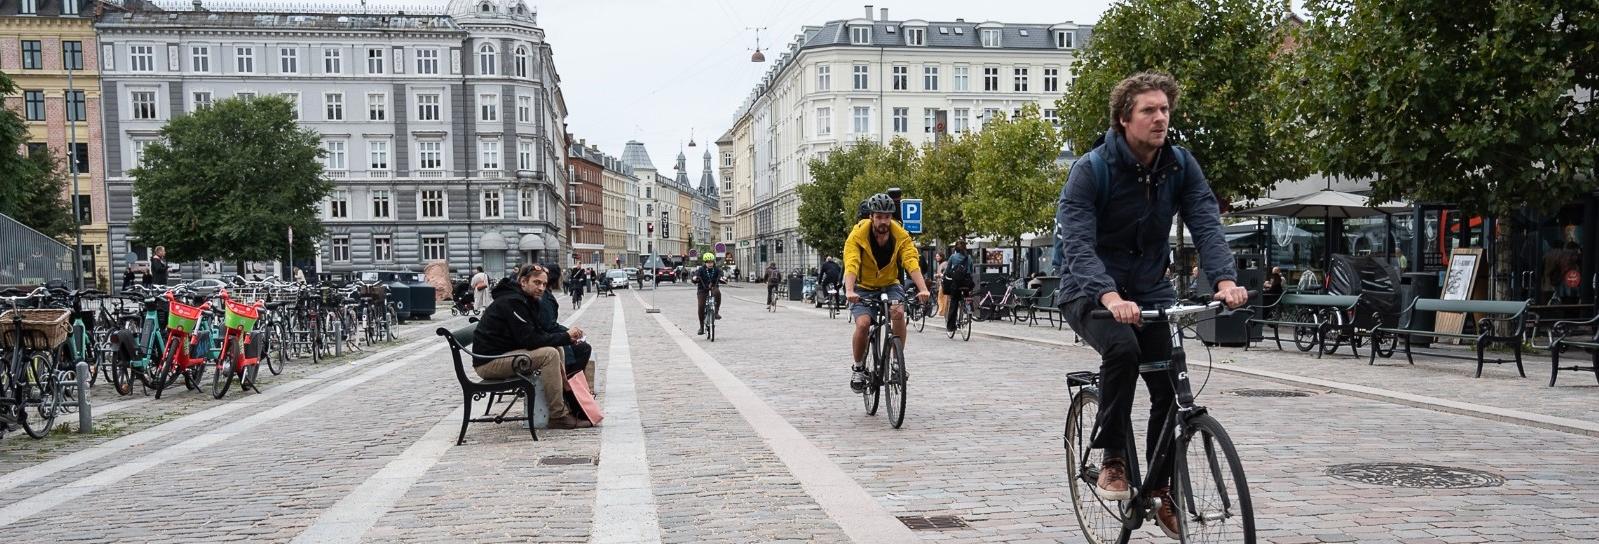 Giotto Dibondon Arkitektur sovende Cykelgader i København | Københavns Kommunes hjemmeside